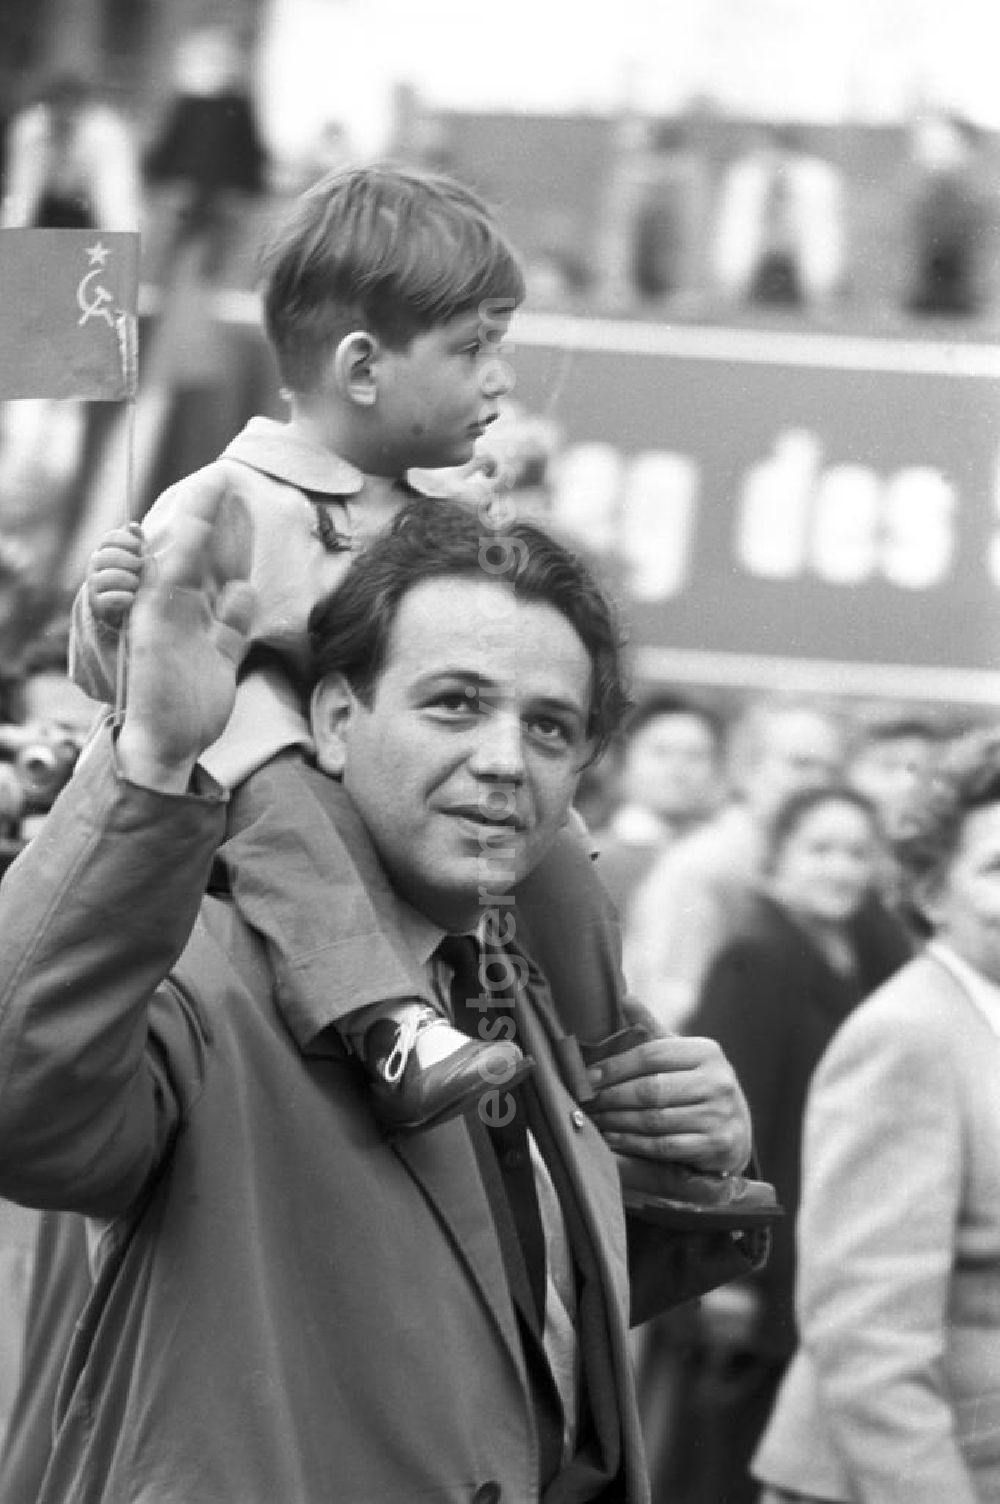 GDR picture archive: Leipzig - Auf der Demonstration zum 1. Mai 1958 in Leipzig sitzt ein Junge auf den Schultern seines Vaters und hält eine Sowjet-Fahne in der Hand.